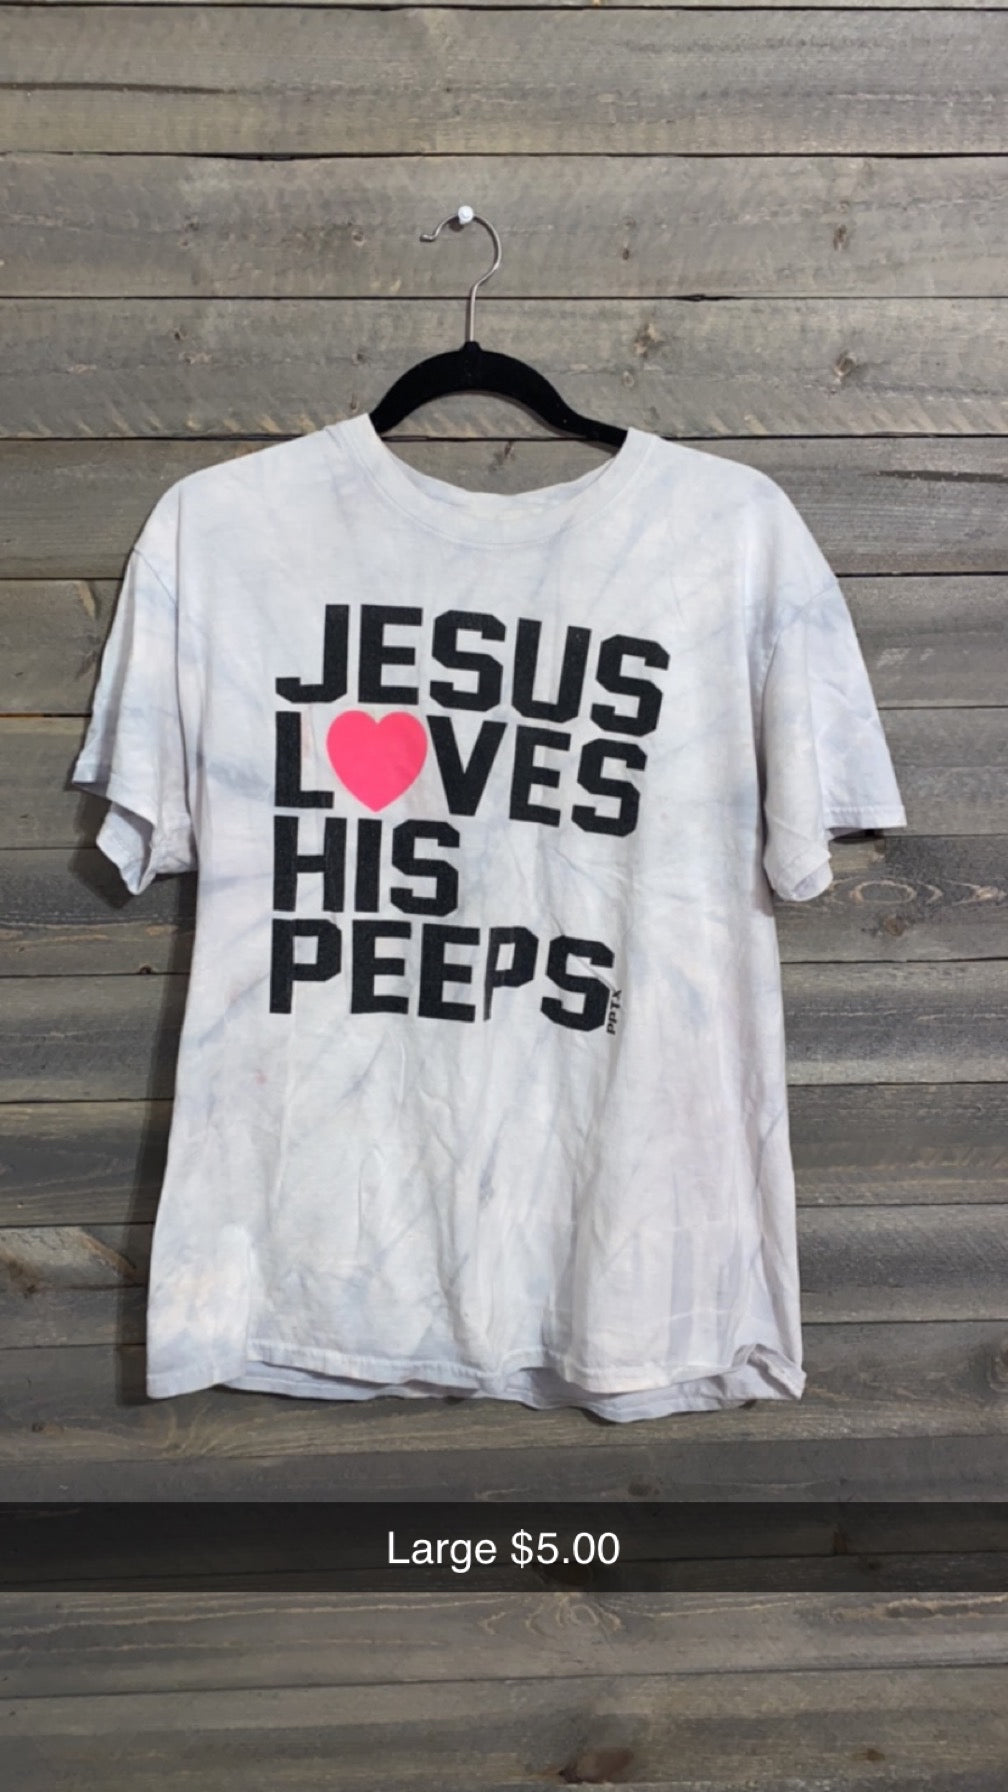 #1 JESUS LOVES HIS PEEPS LARGE 10/23